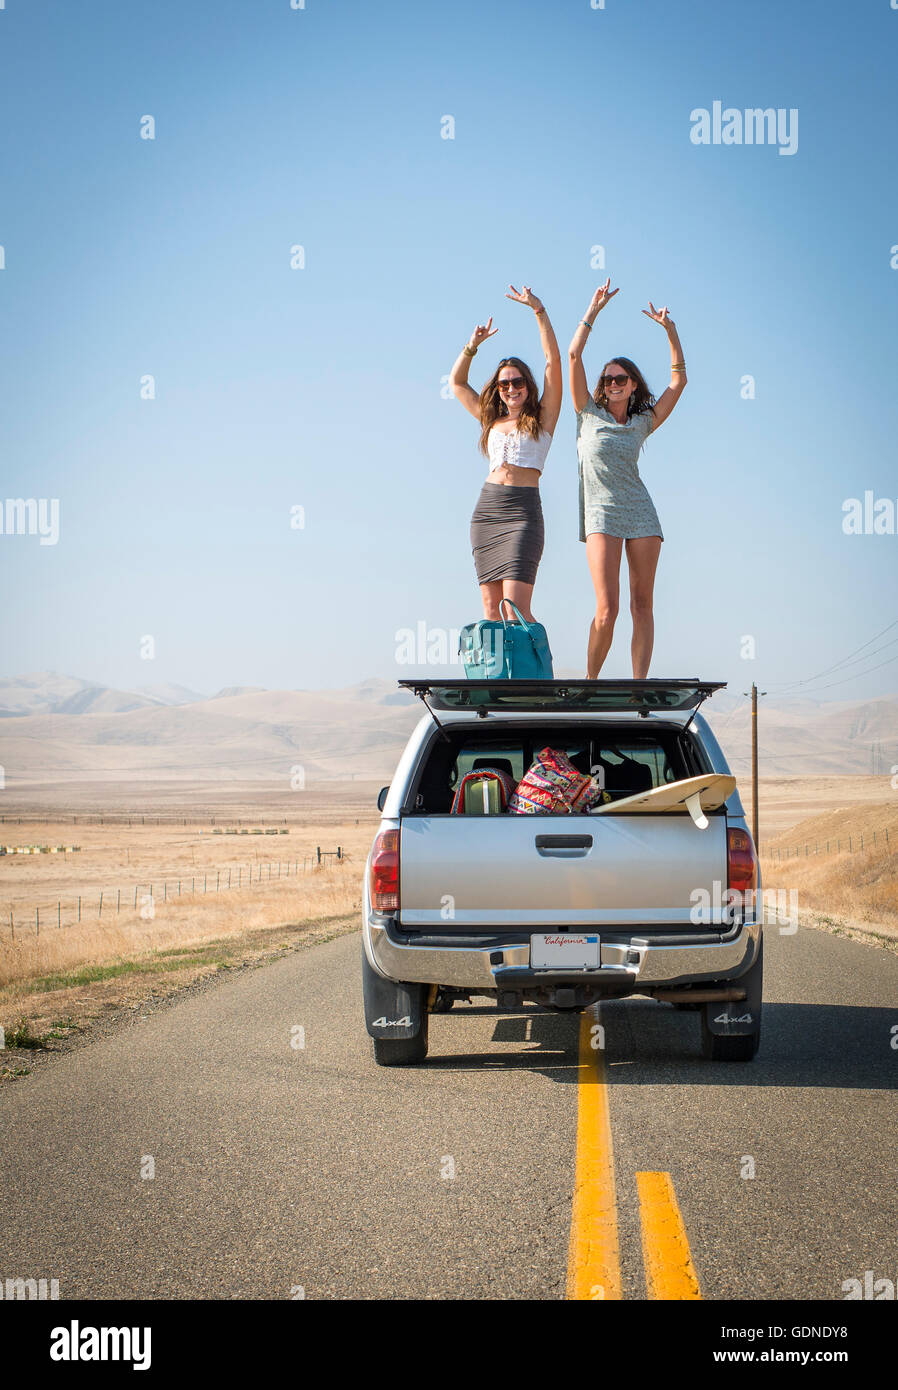 Le donne in piedi sul tetto del veicolo, Highway 1, CALIFORNIA, STATI UNITI D'AMERICA Foto Stock